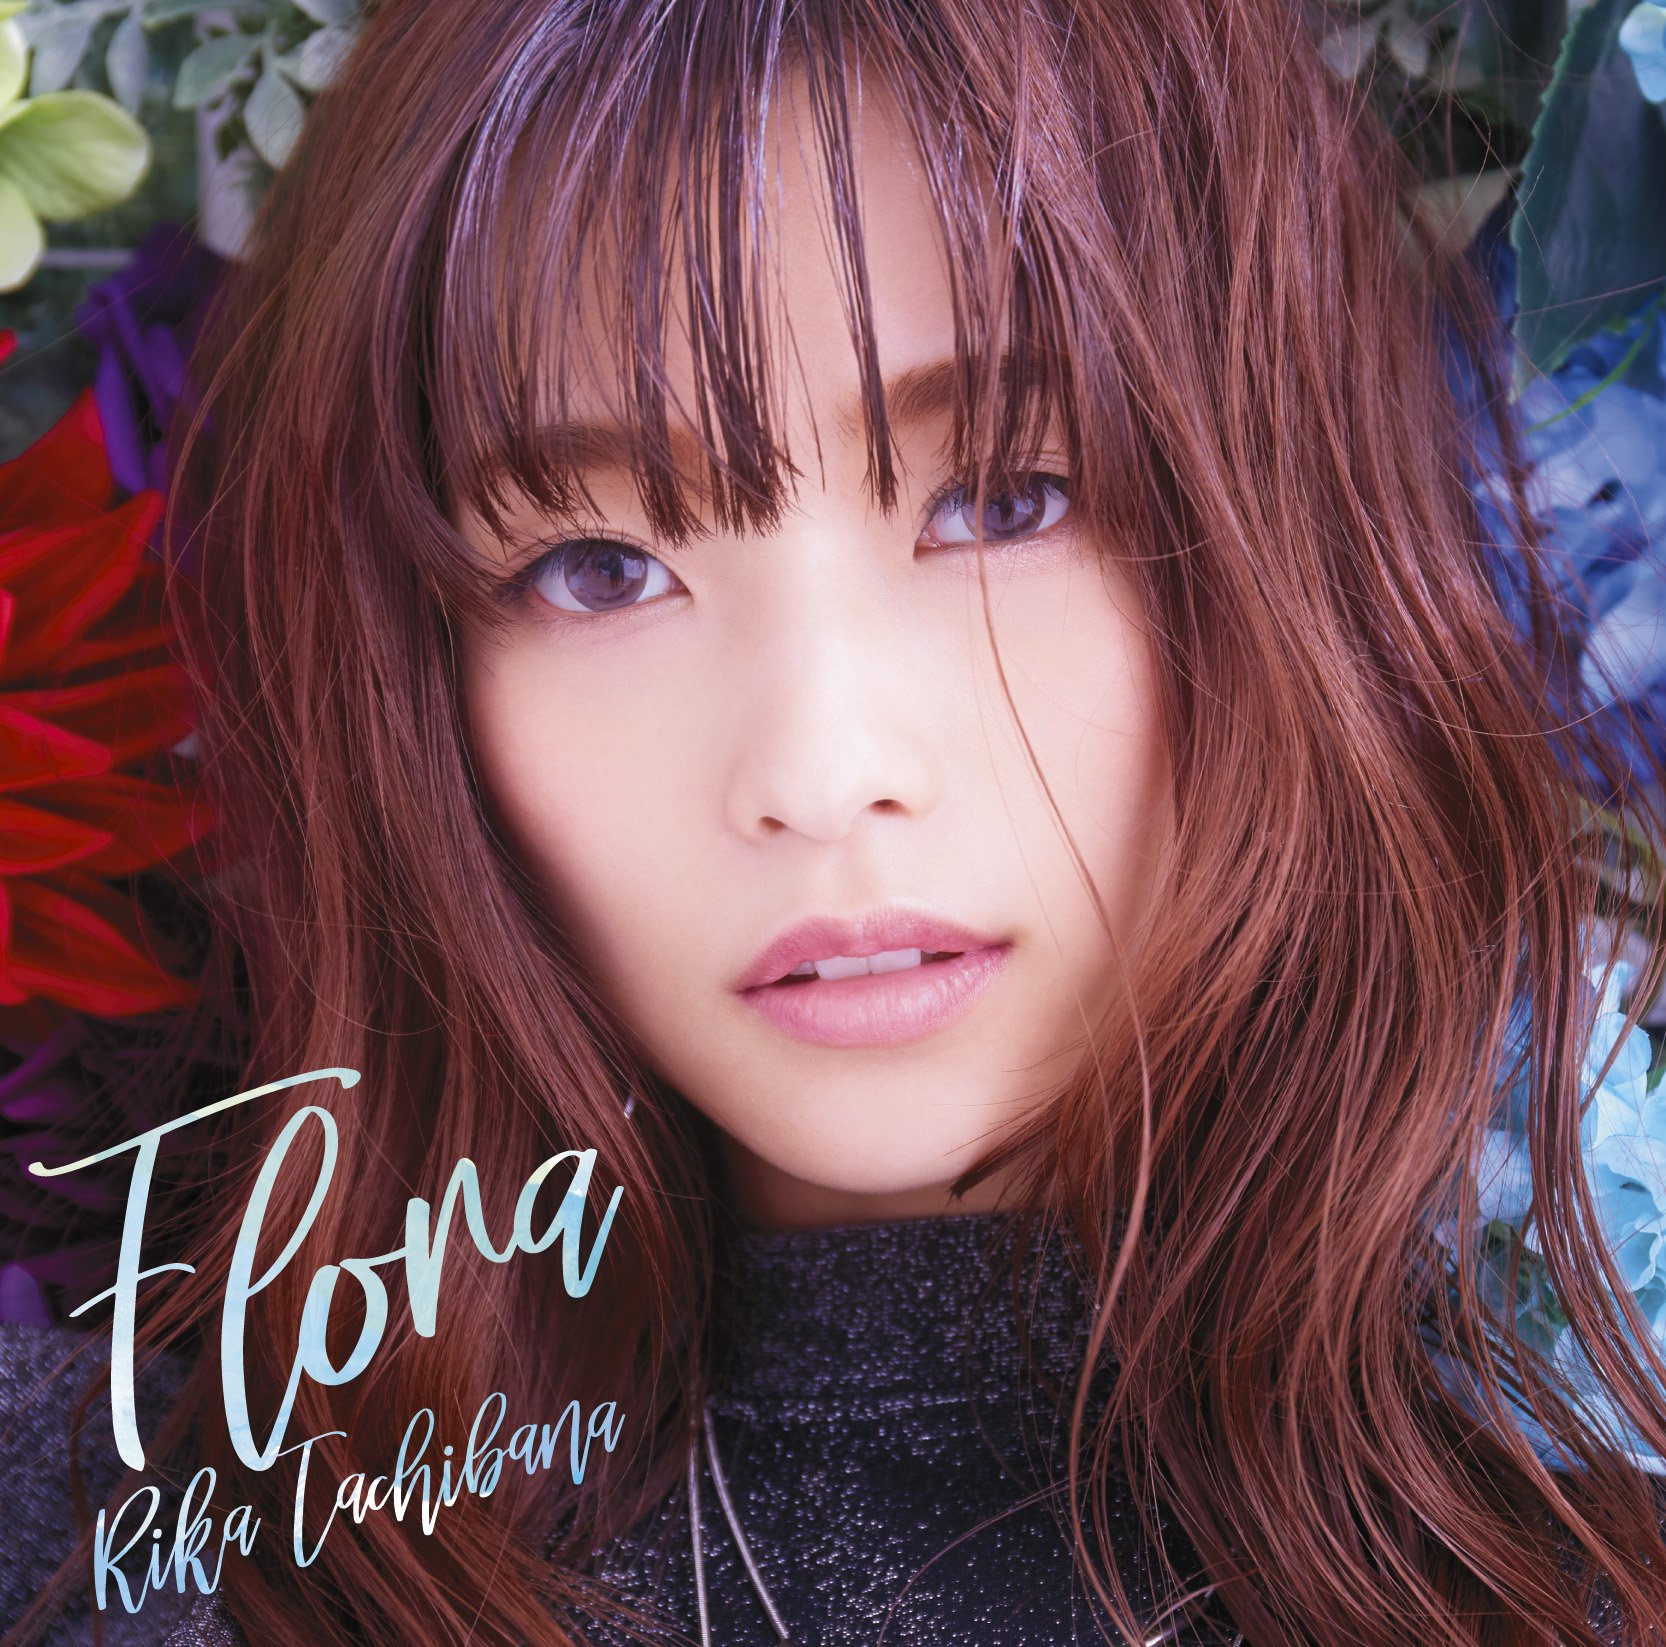 立花理香 (Rika Tachibana) – Flora [FLAC / 24bit Lossless / WEB] [2018.02.28]